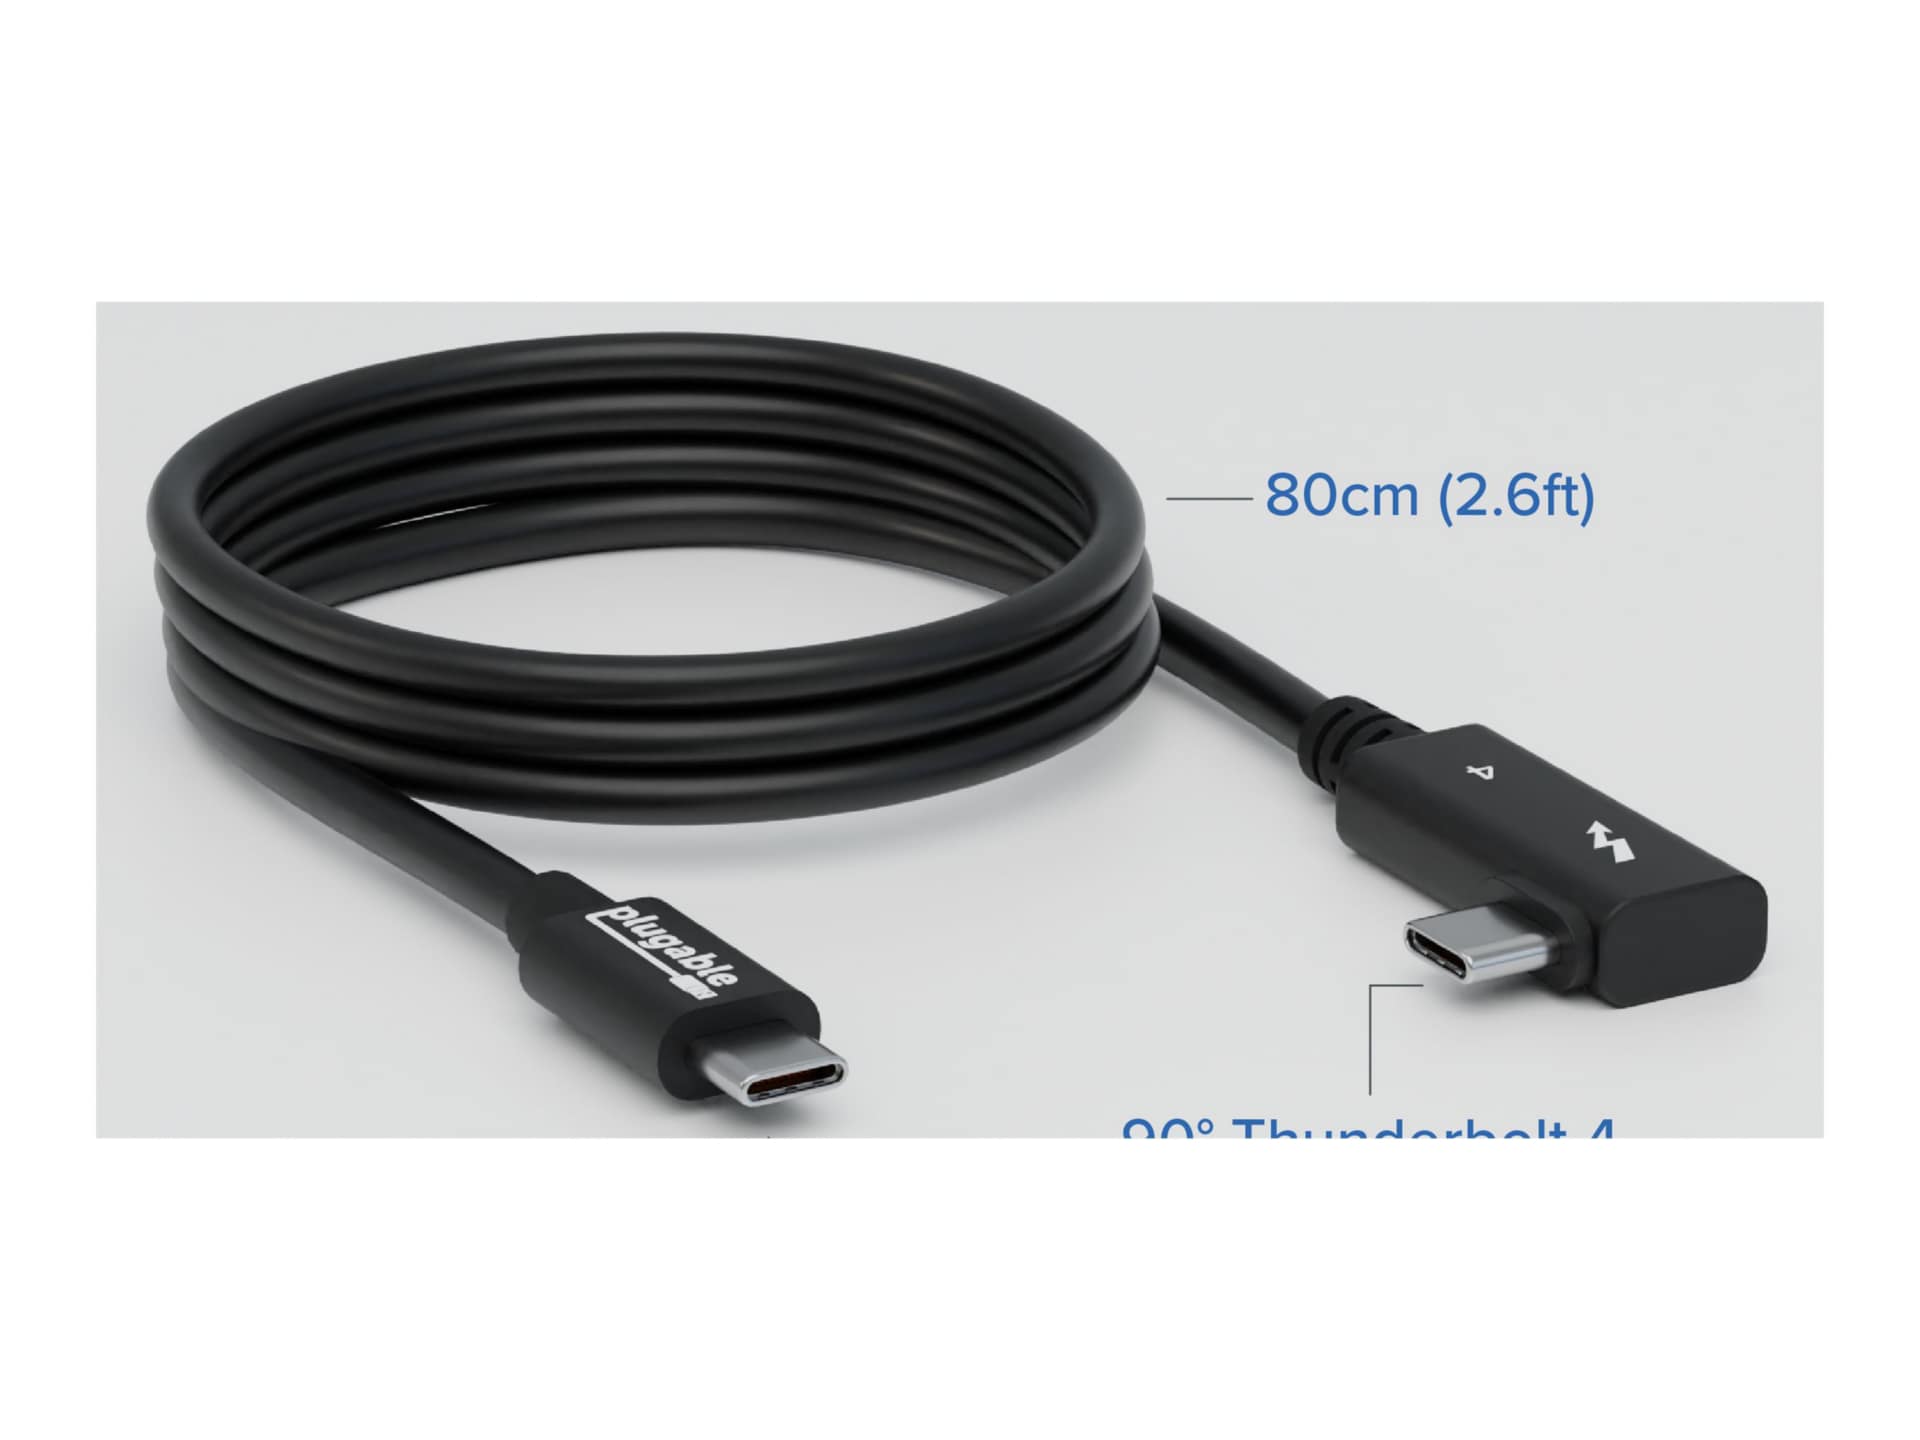 Plugable - Thunderbolt cable - 24 pin USB-C to 24 pin USB-C - 2.6 ft